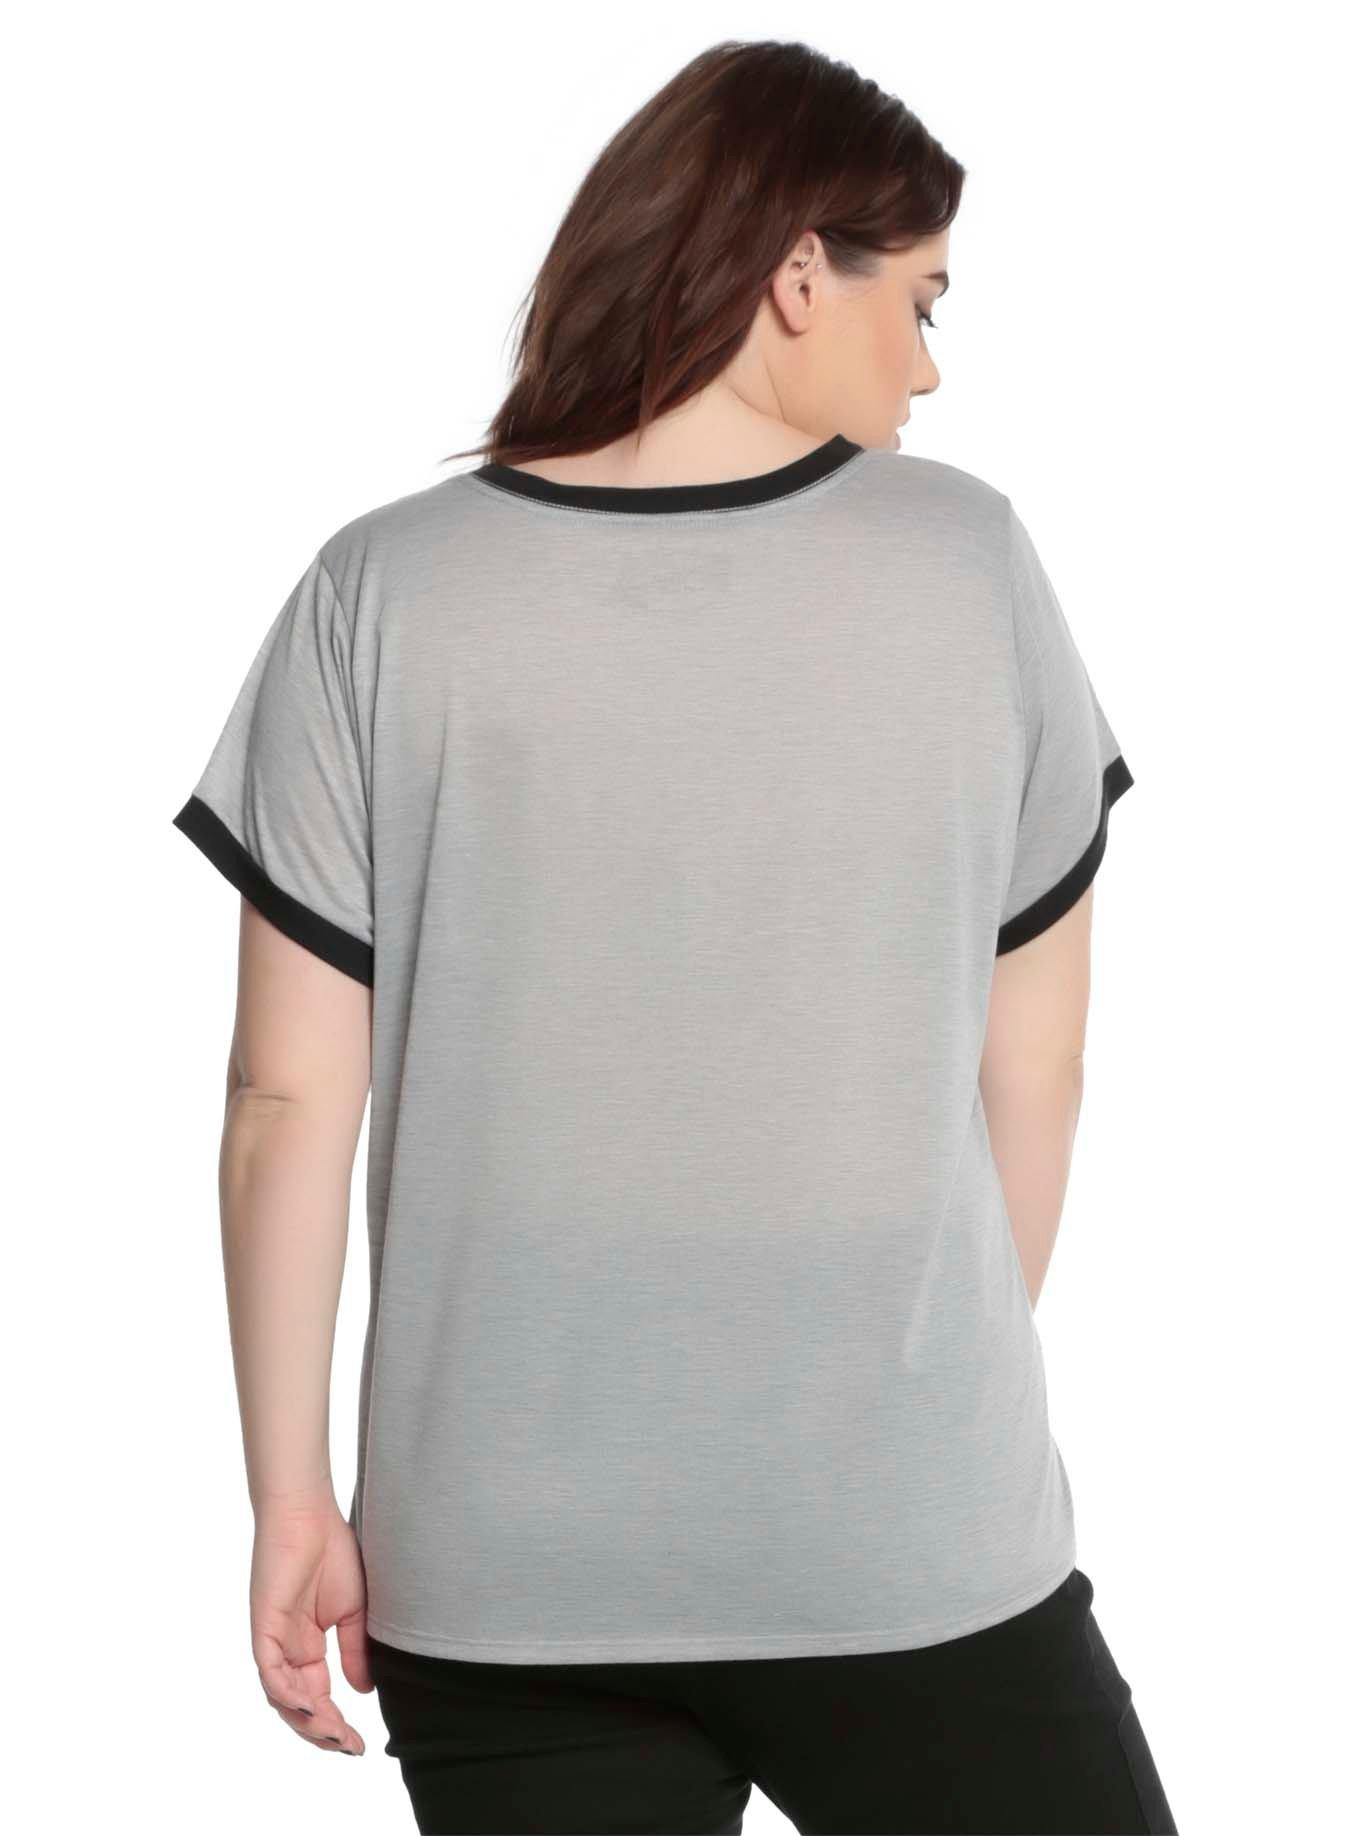 Disney Peter Pan Tinker Bell Moon Silhouette Girls Ringer T-Shirt Plus Size, , alternate